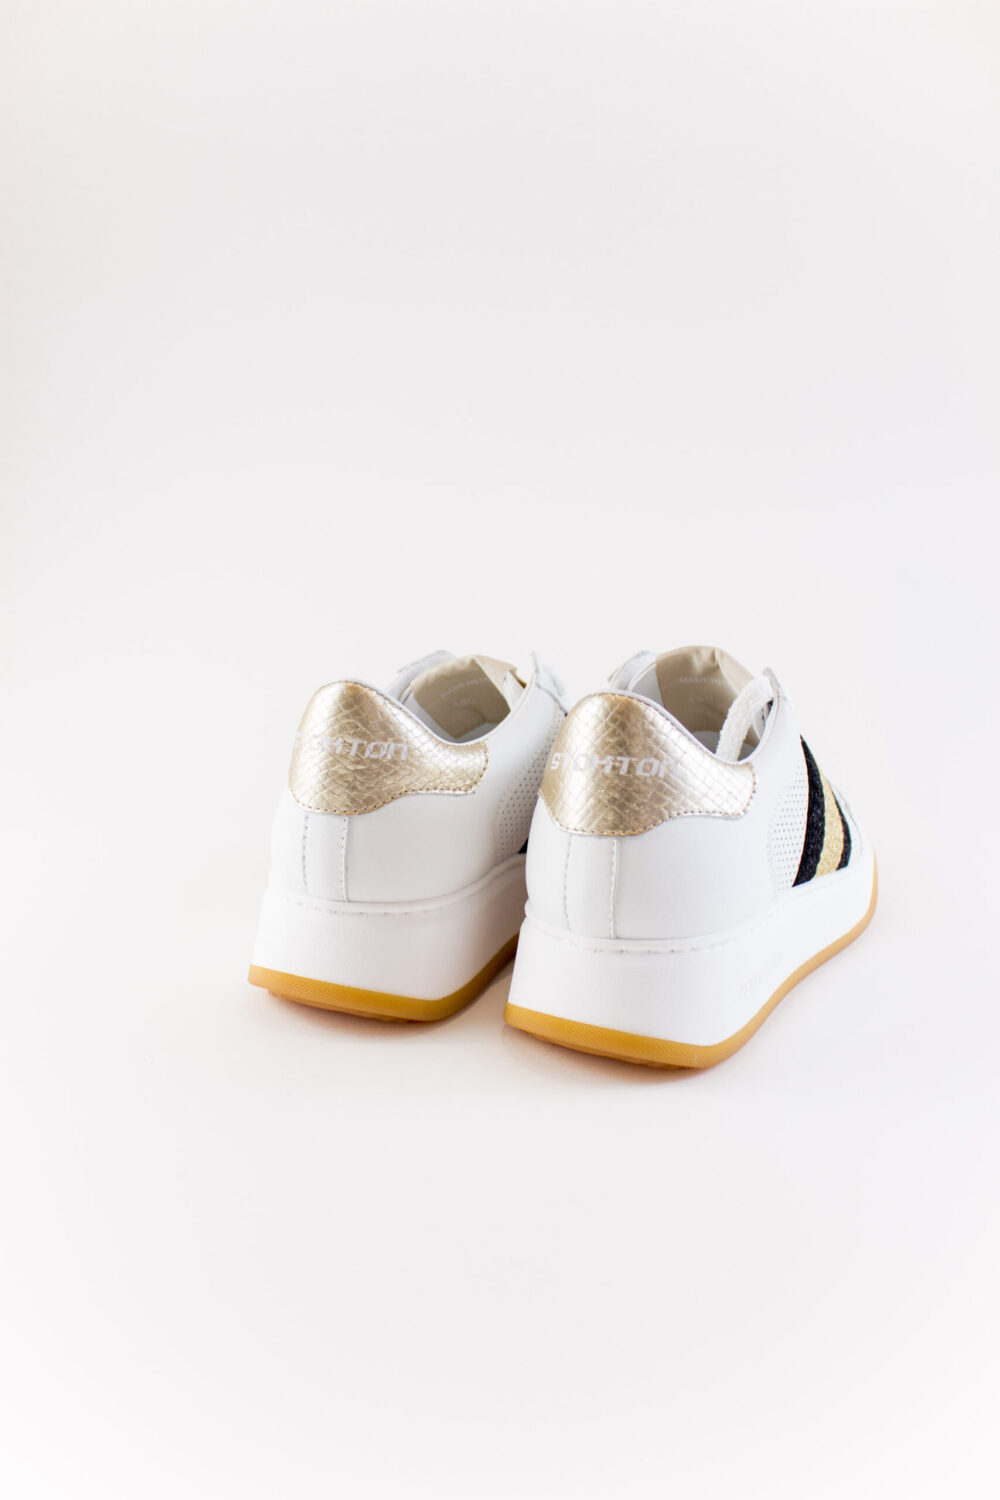 Stokton Leather Sneaker Gold Stripe - La Matta